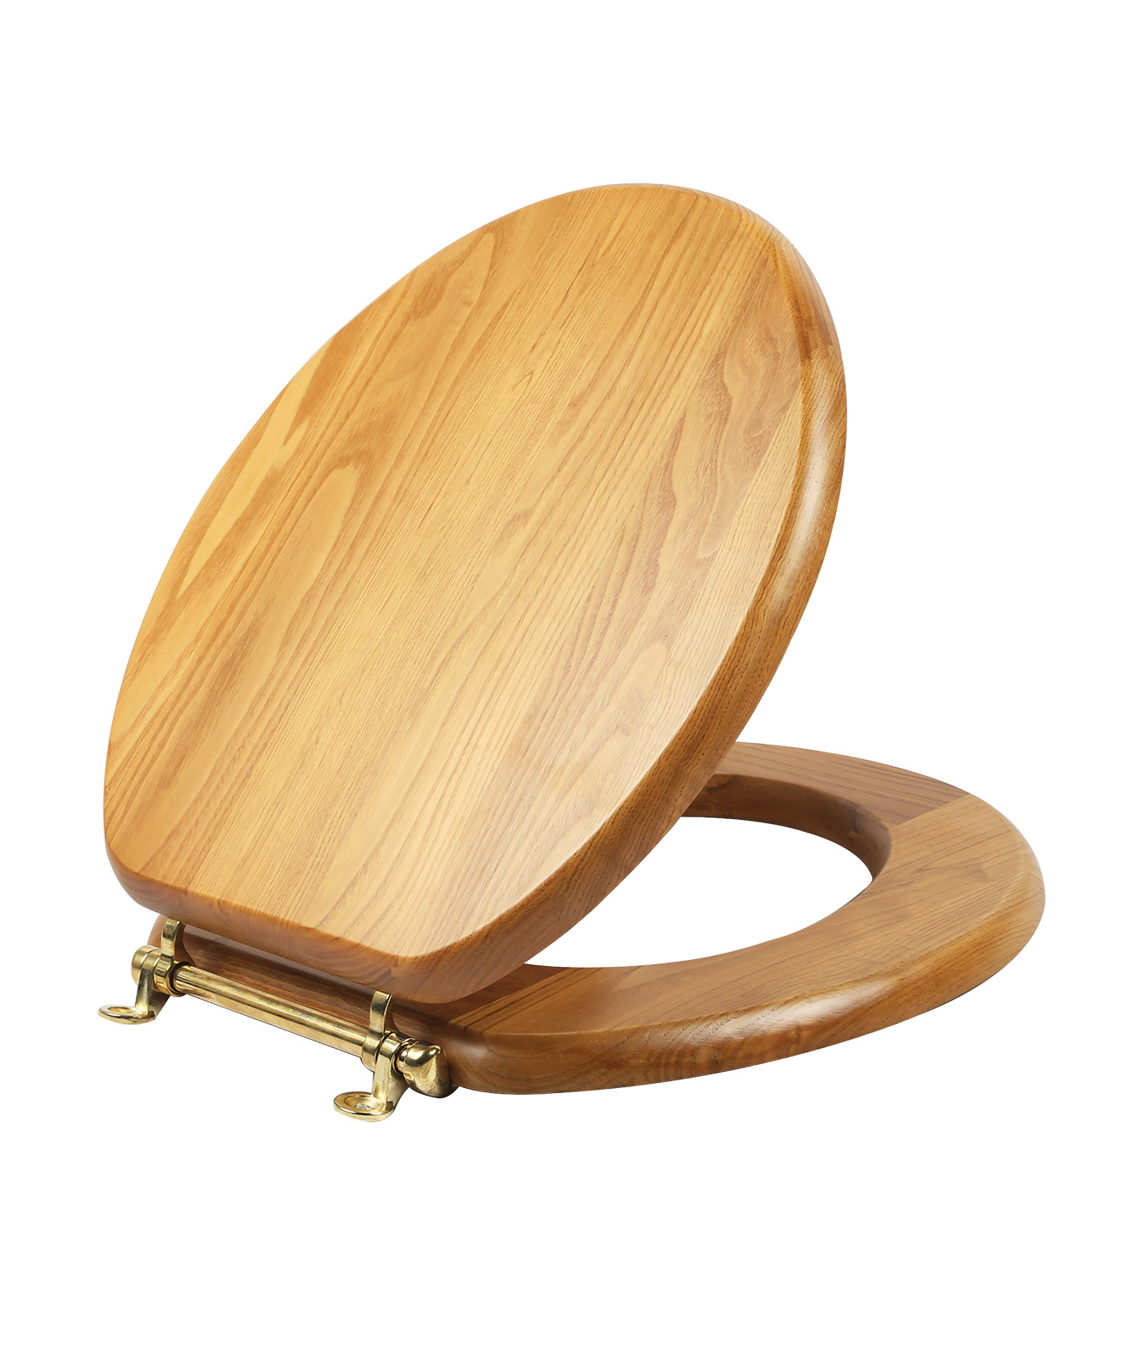 Деревянный стульчак для унитаза. Деревянное сиденье для унитаза. Деревянная сидушка для унитаза. Унитаз с деревянной крышкой. Крышка для унитаза из дерева.